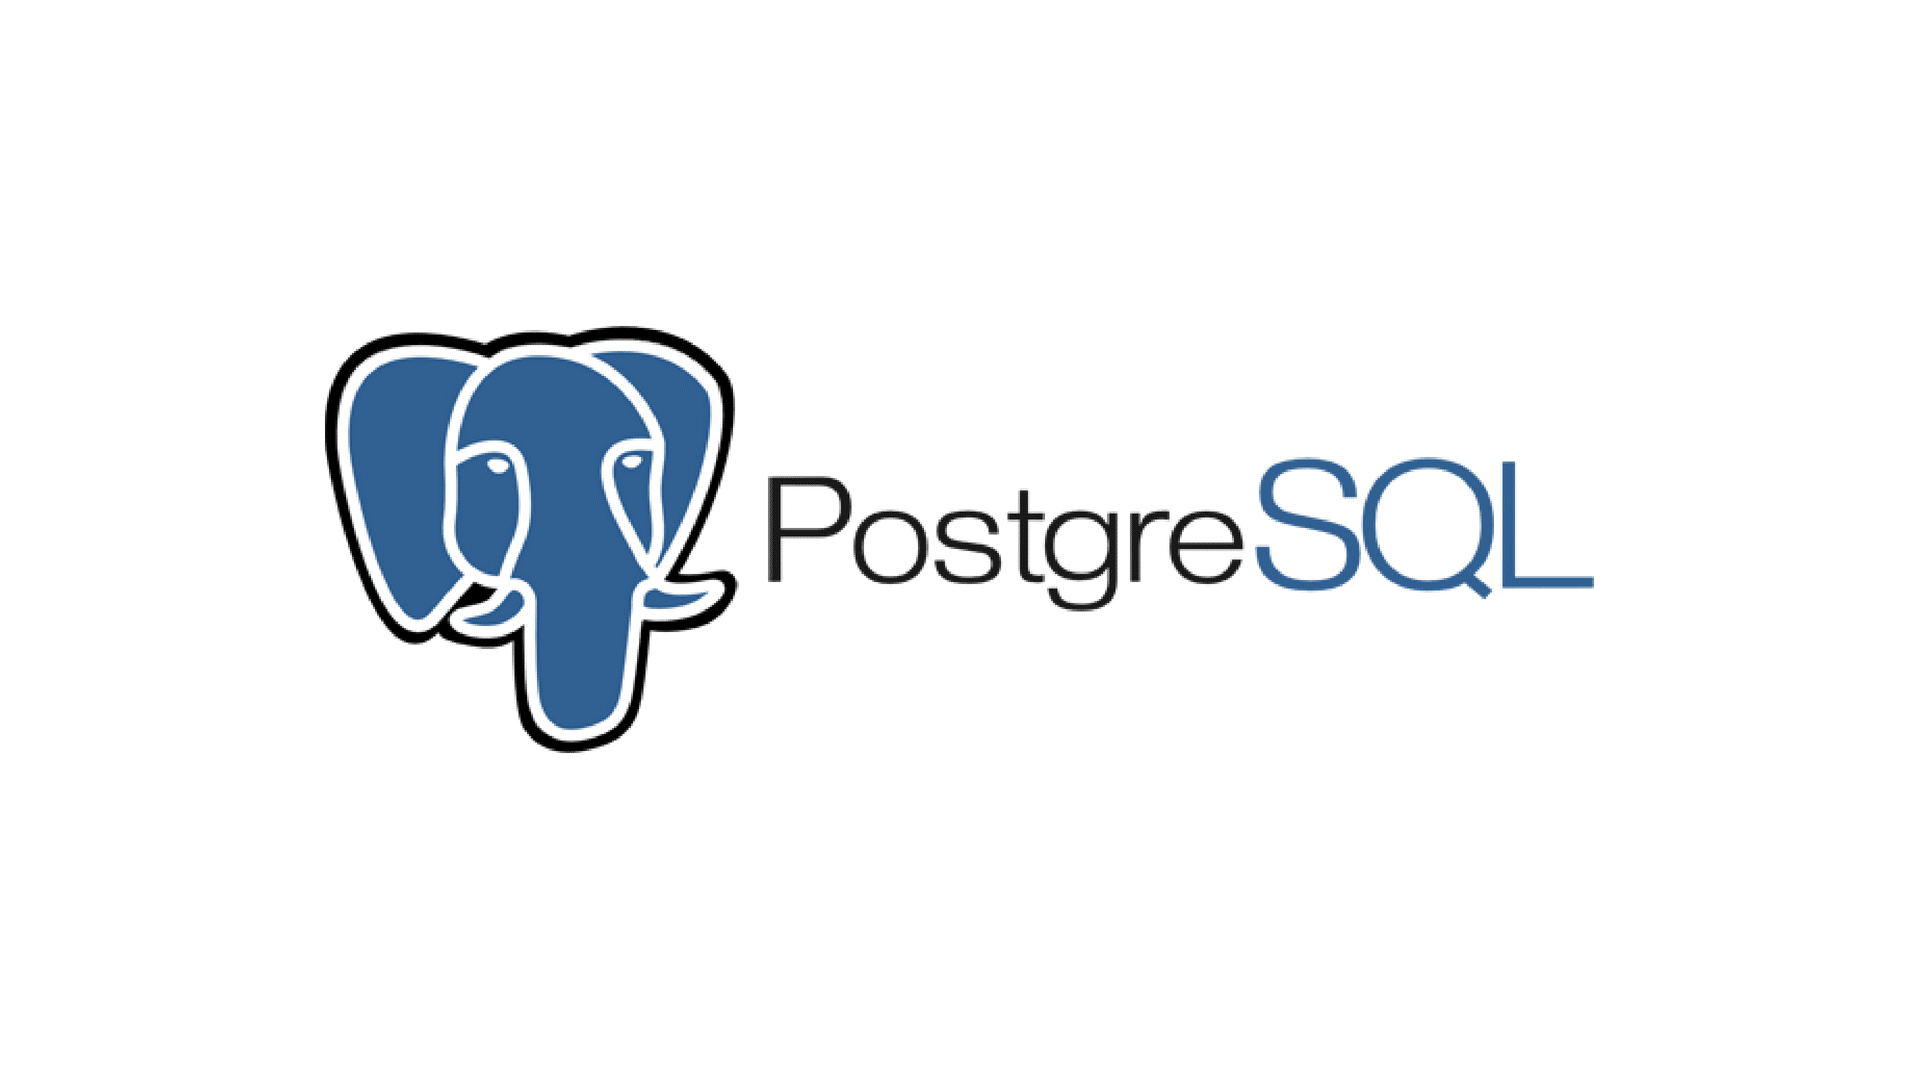 Il logo di PostgreSQL, che mostra il testo sotto una testa di elefante blu stilizzata e delineata in bianco e nero.